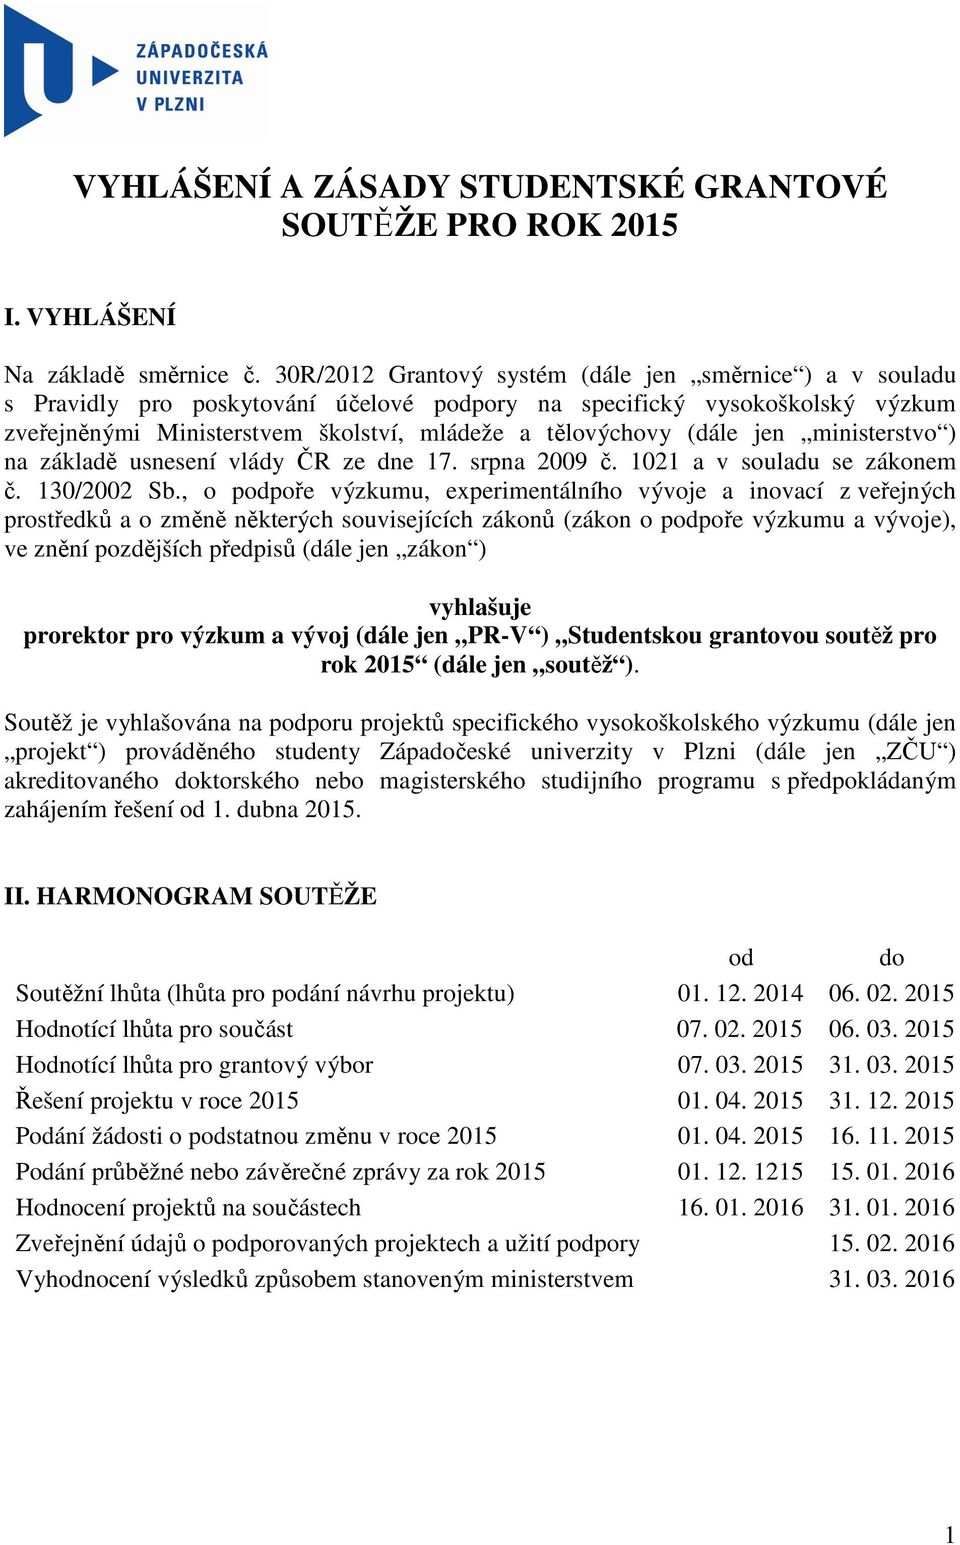 (dále jen ministerstvo ) na základě usnesení vlády ČR ze dne 17. srpna 2009 č. 1021 a v souladu se zákonem č. 130/2002 Sb.